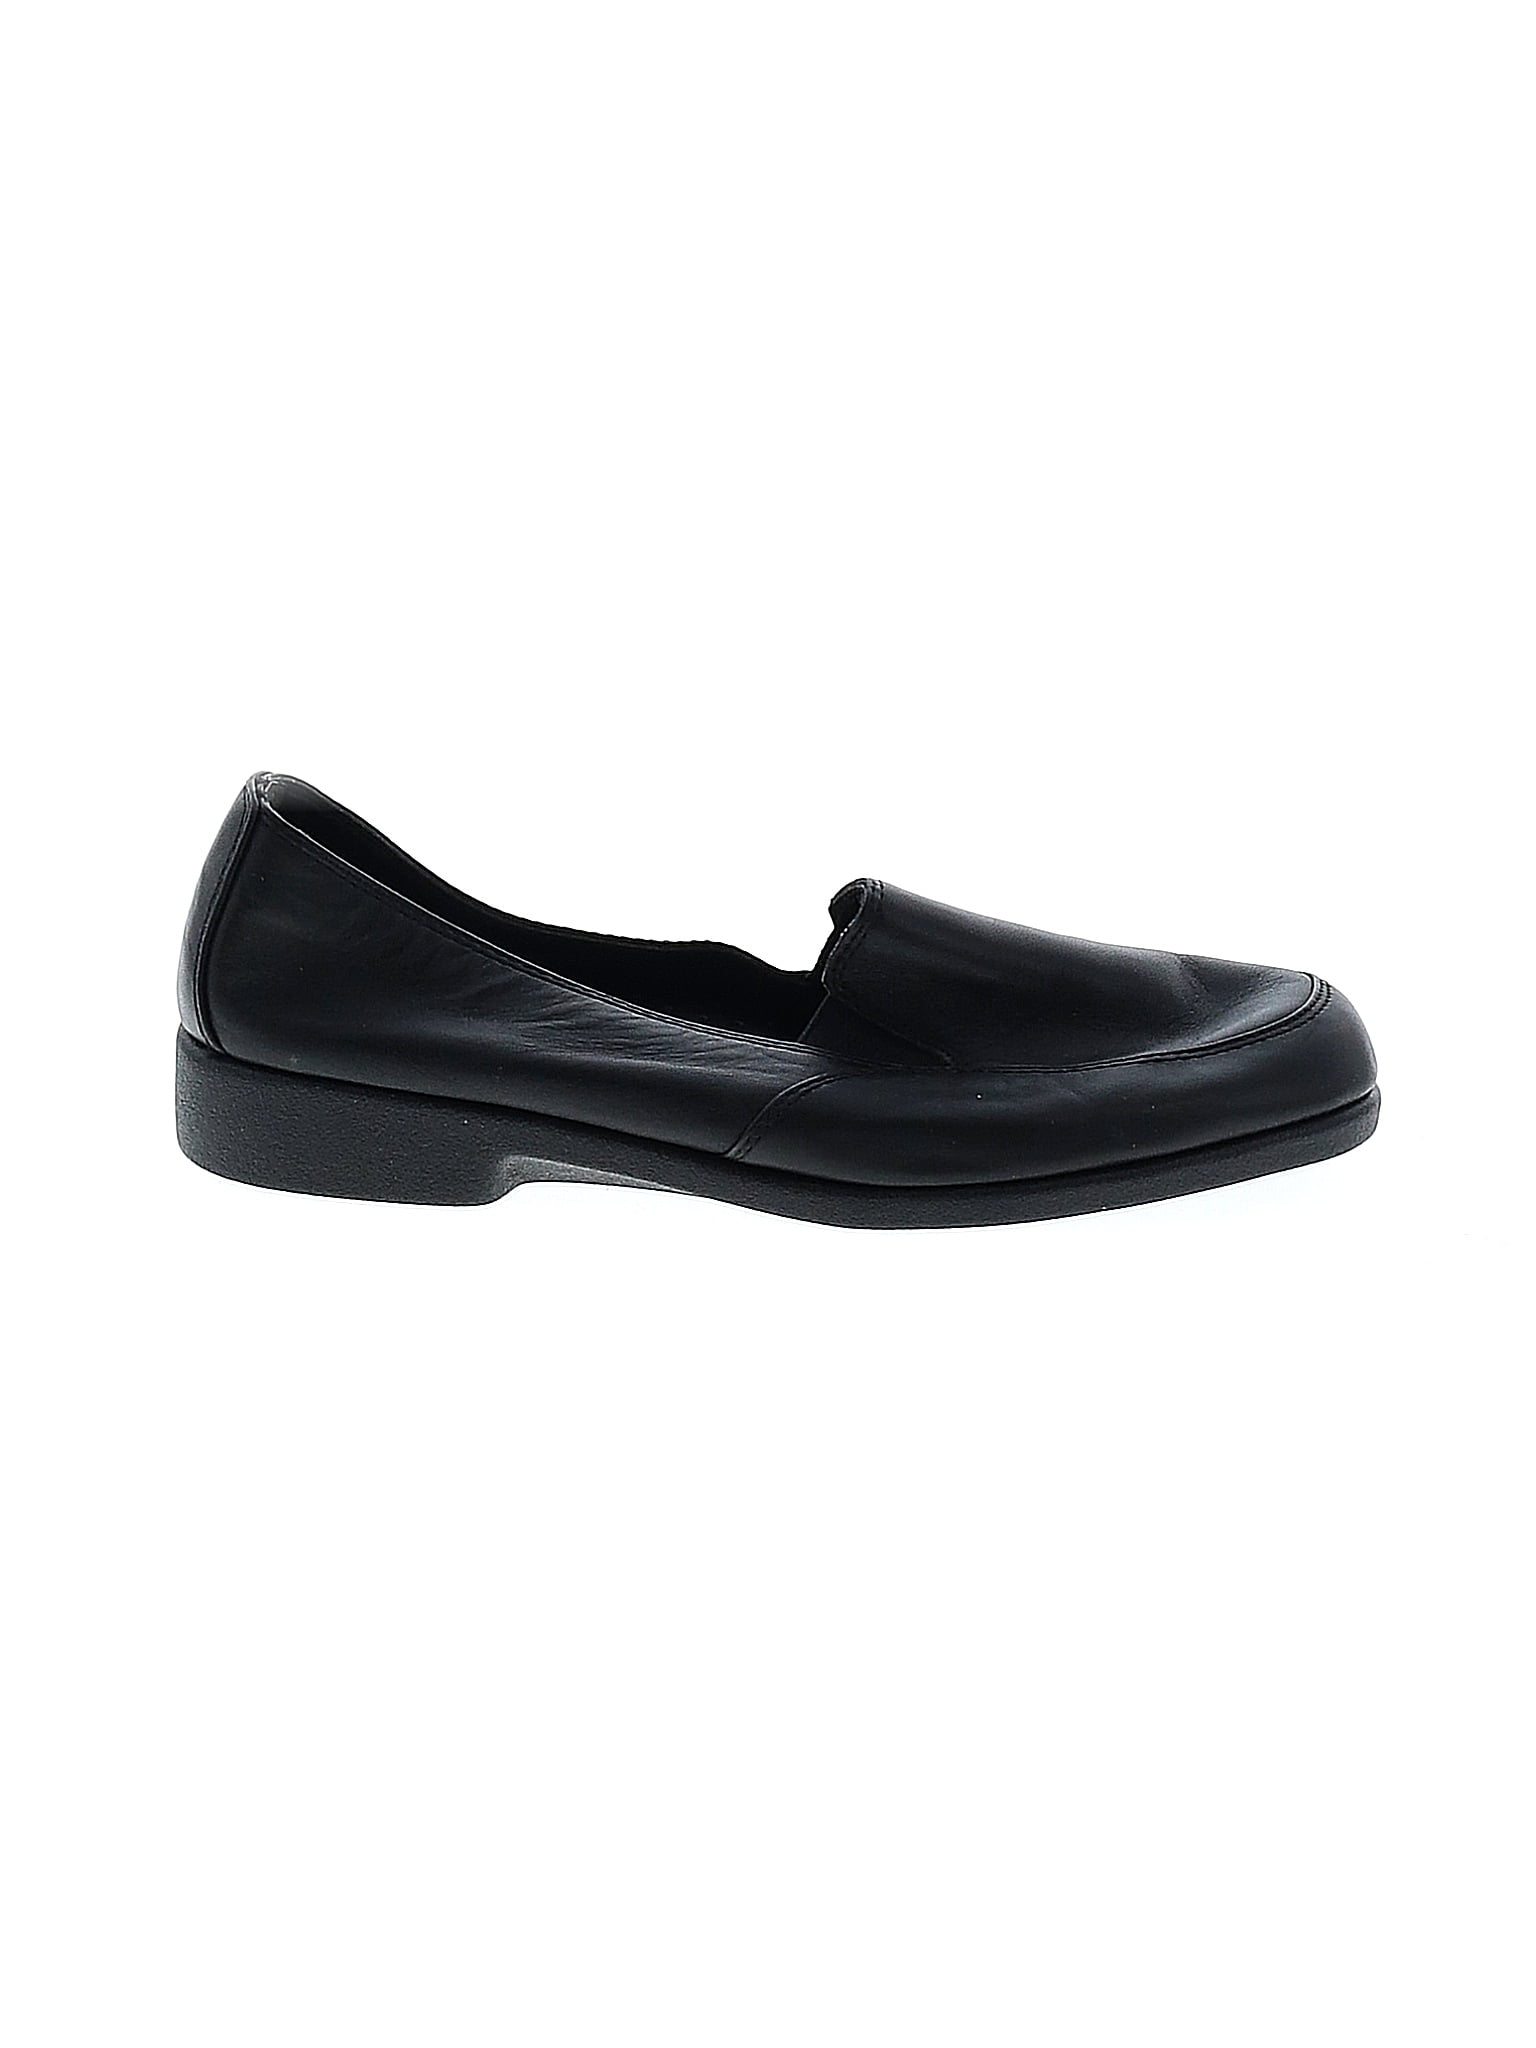 Liz Baker Tina 024-5461 Black Leather Upper Sling Back Heels - Size 7 M  on eBid United States